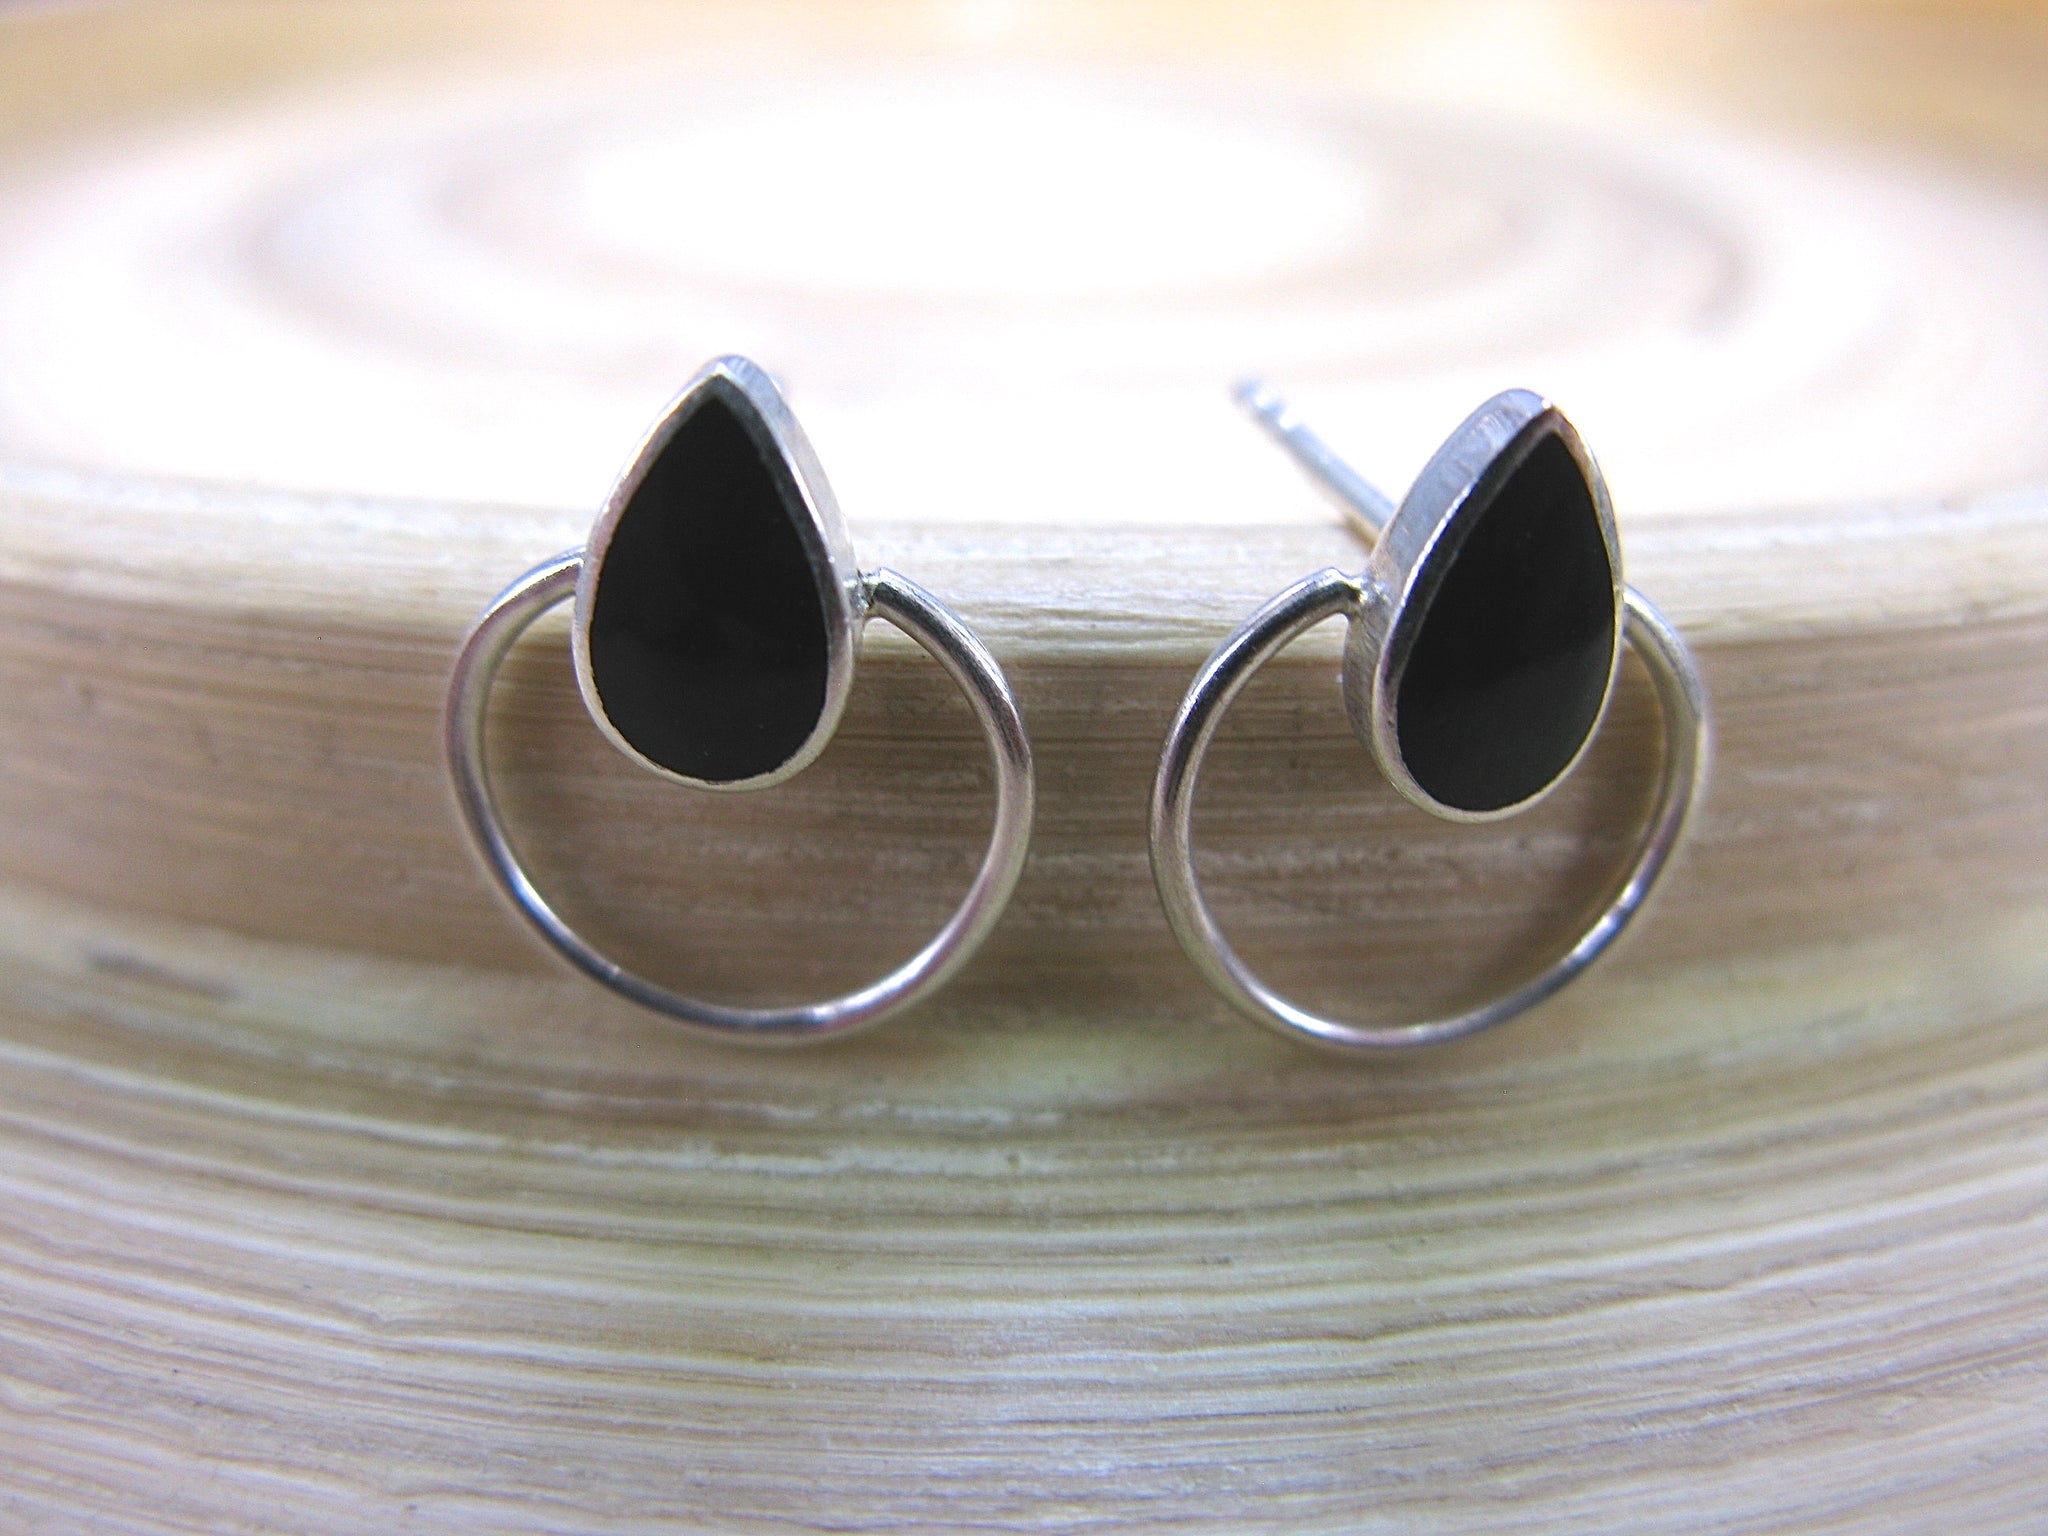 Onyx Stud Earrings in 925 Sterling Silver